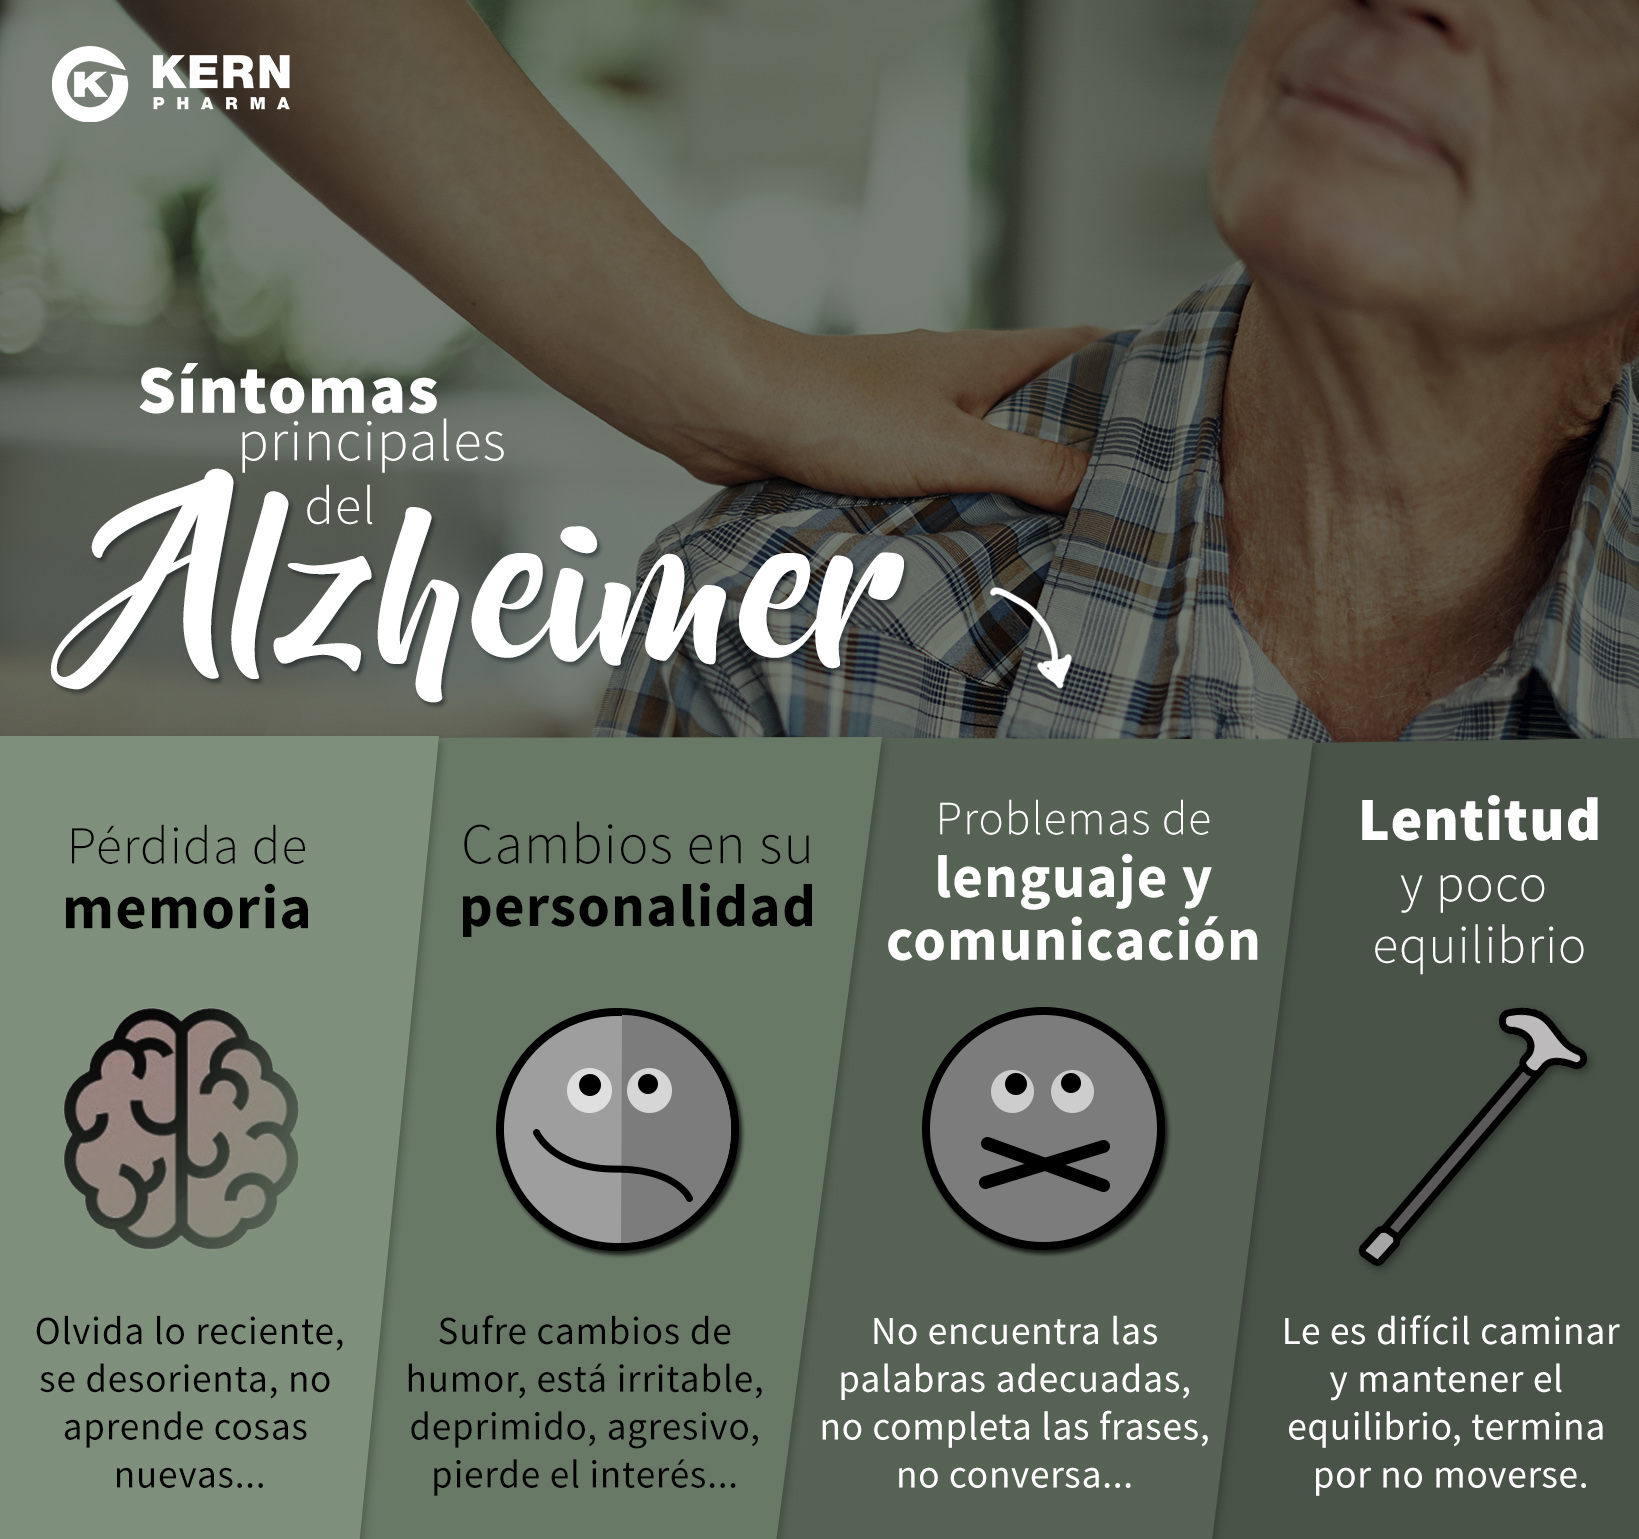  Síntomas del alzhéimer